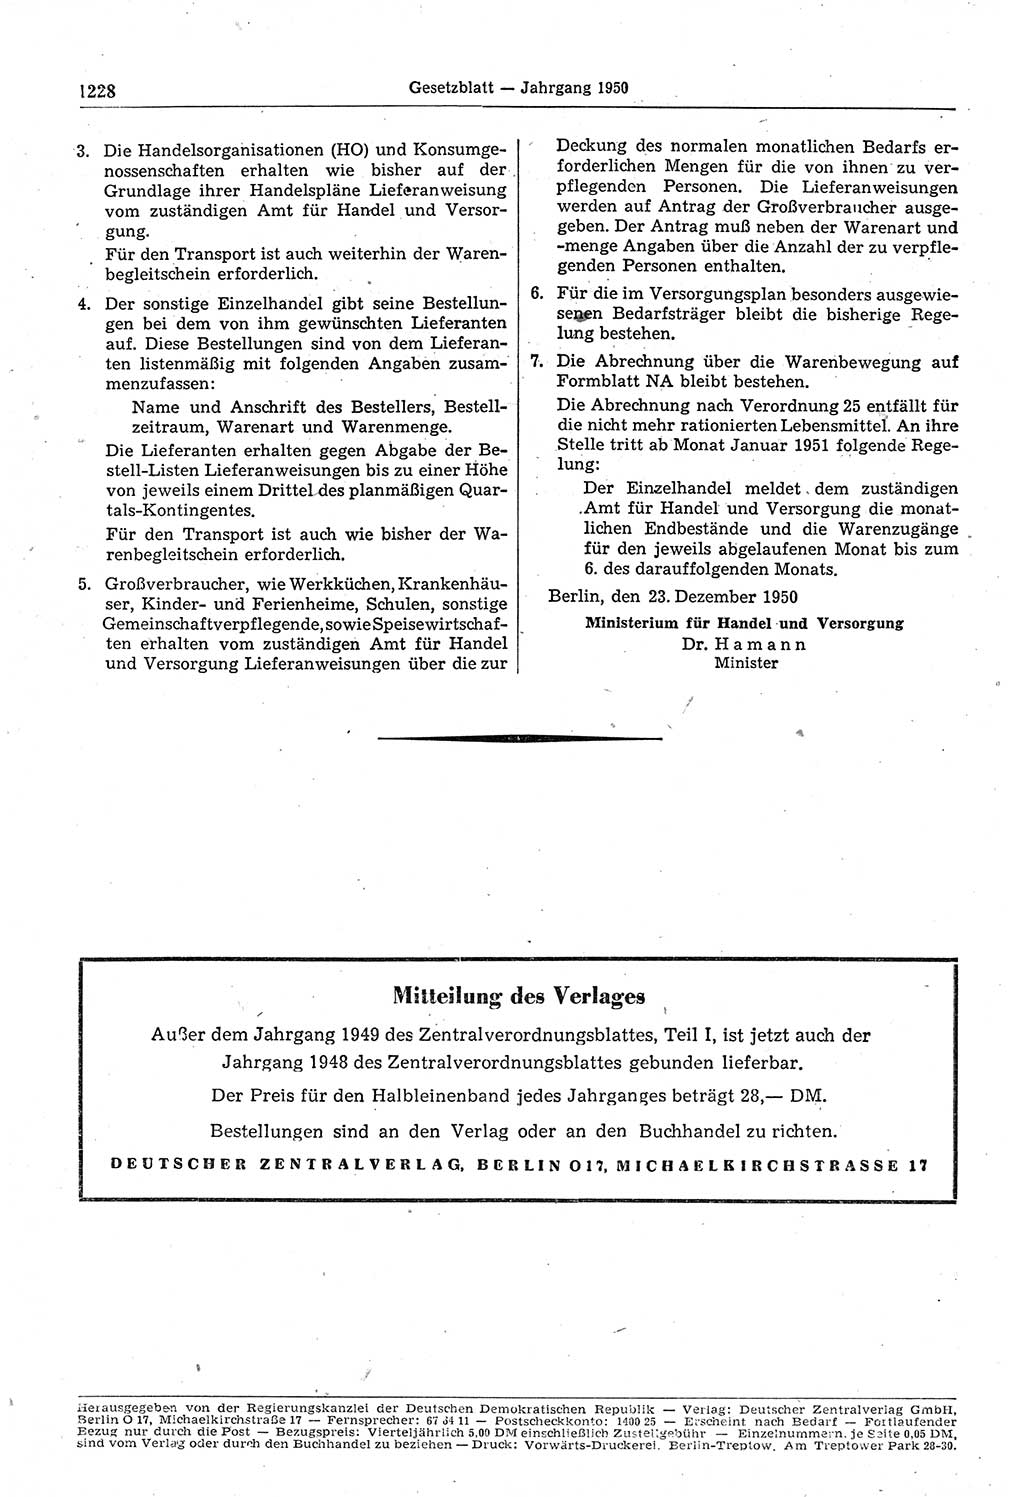 Gesetzblatt (GBl.) der Deutschen Demokratischen Republik (DDR) 1950, Seite 1228 (GBl. DDR 1950, S. 1228)